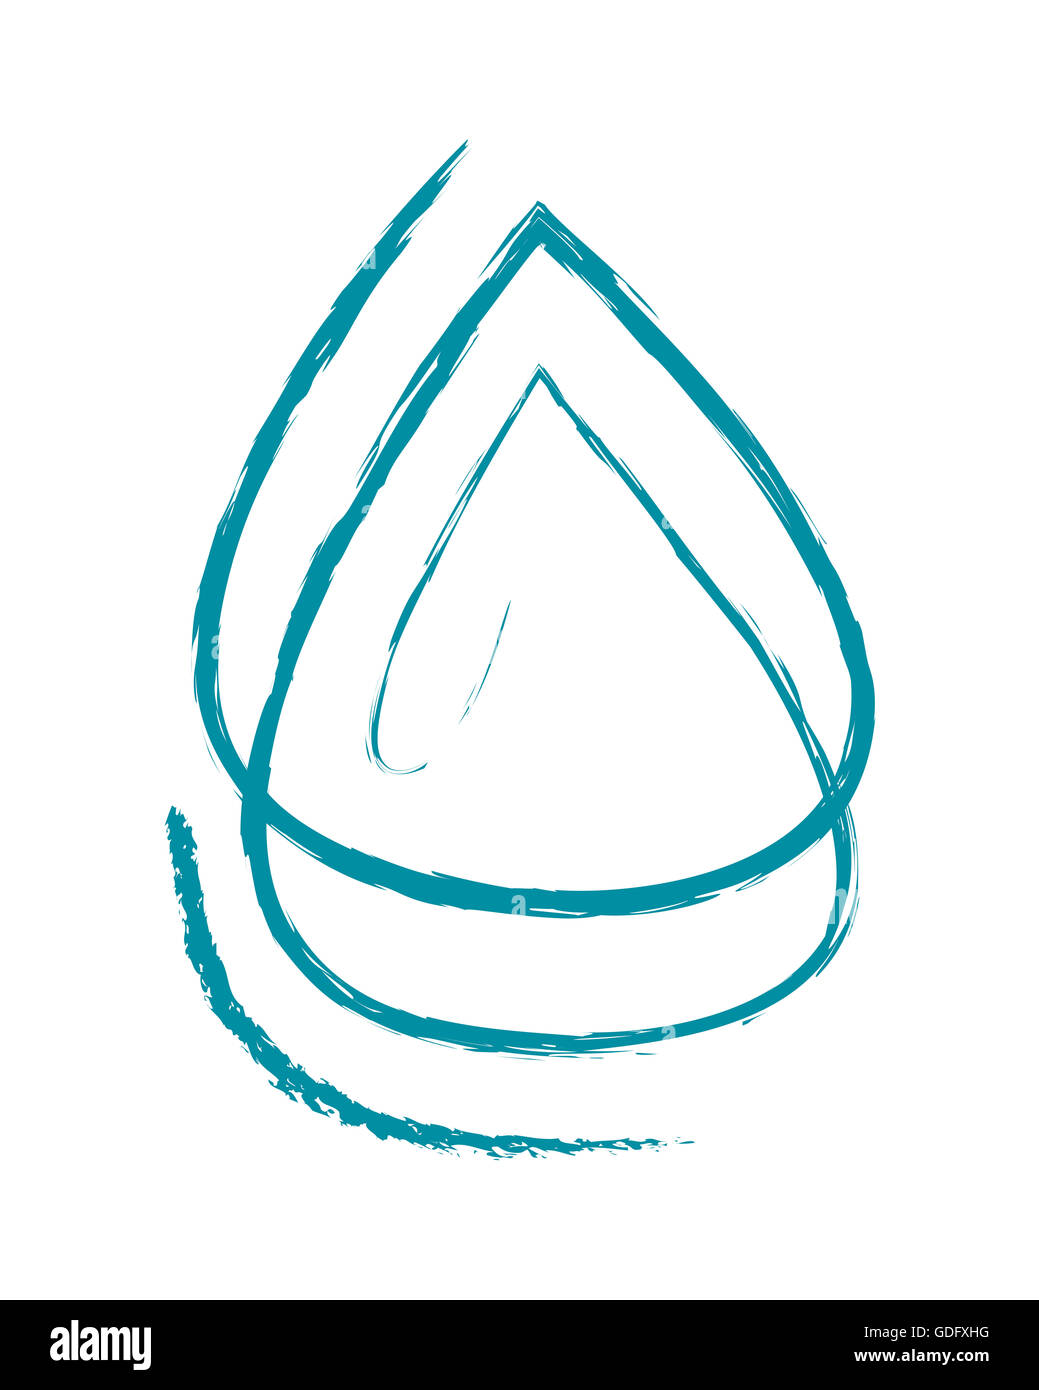 Illustration à la main ou d'un dessin d'une goutte d'eau résumé Banque D'Images